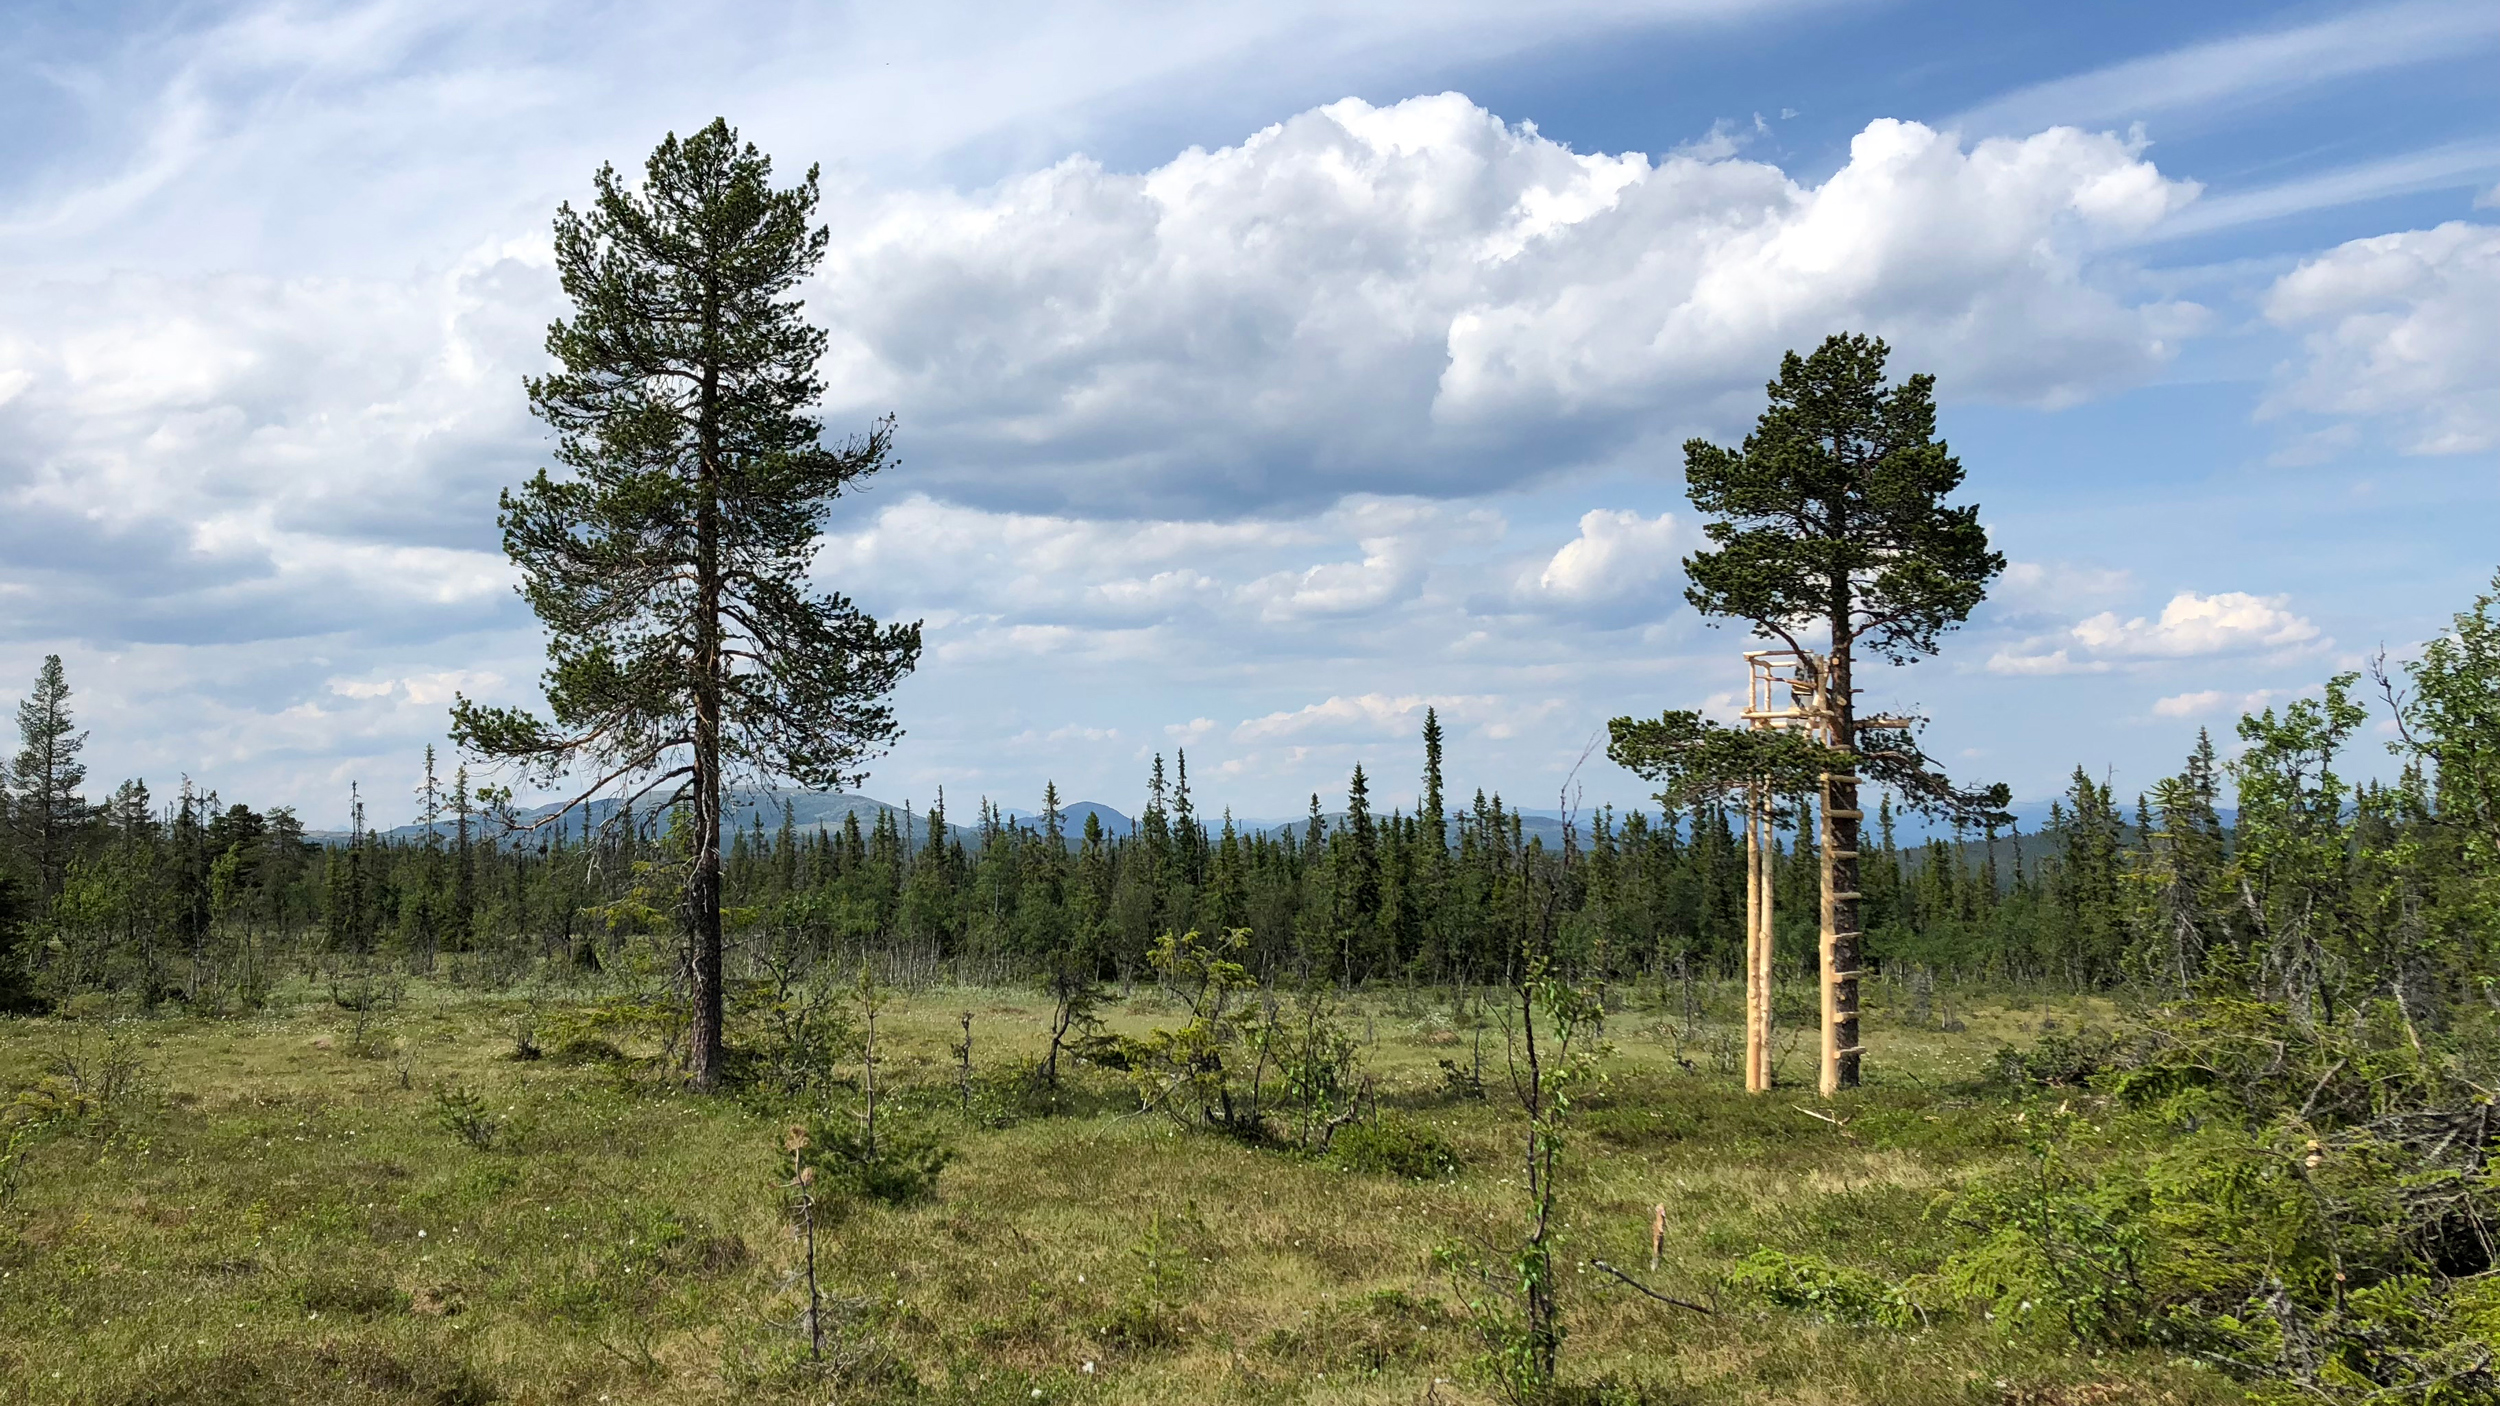 skogfelt med noen høye trær. en ny utkikspost er satt opp i et av trærne.